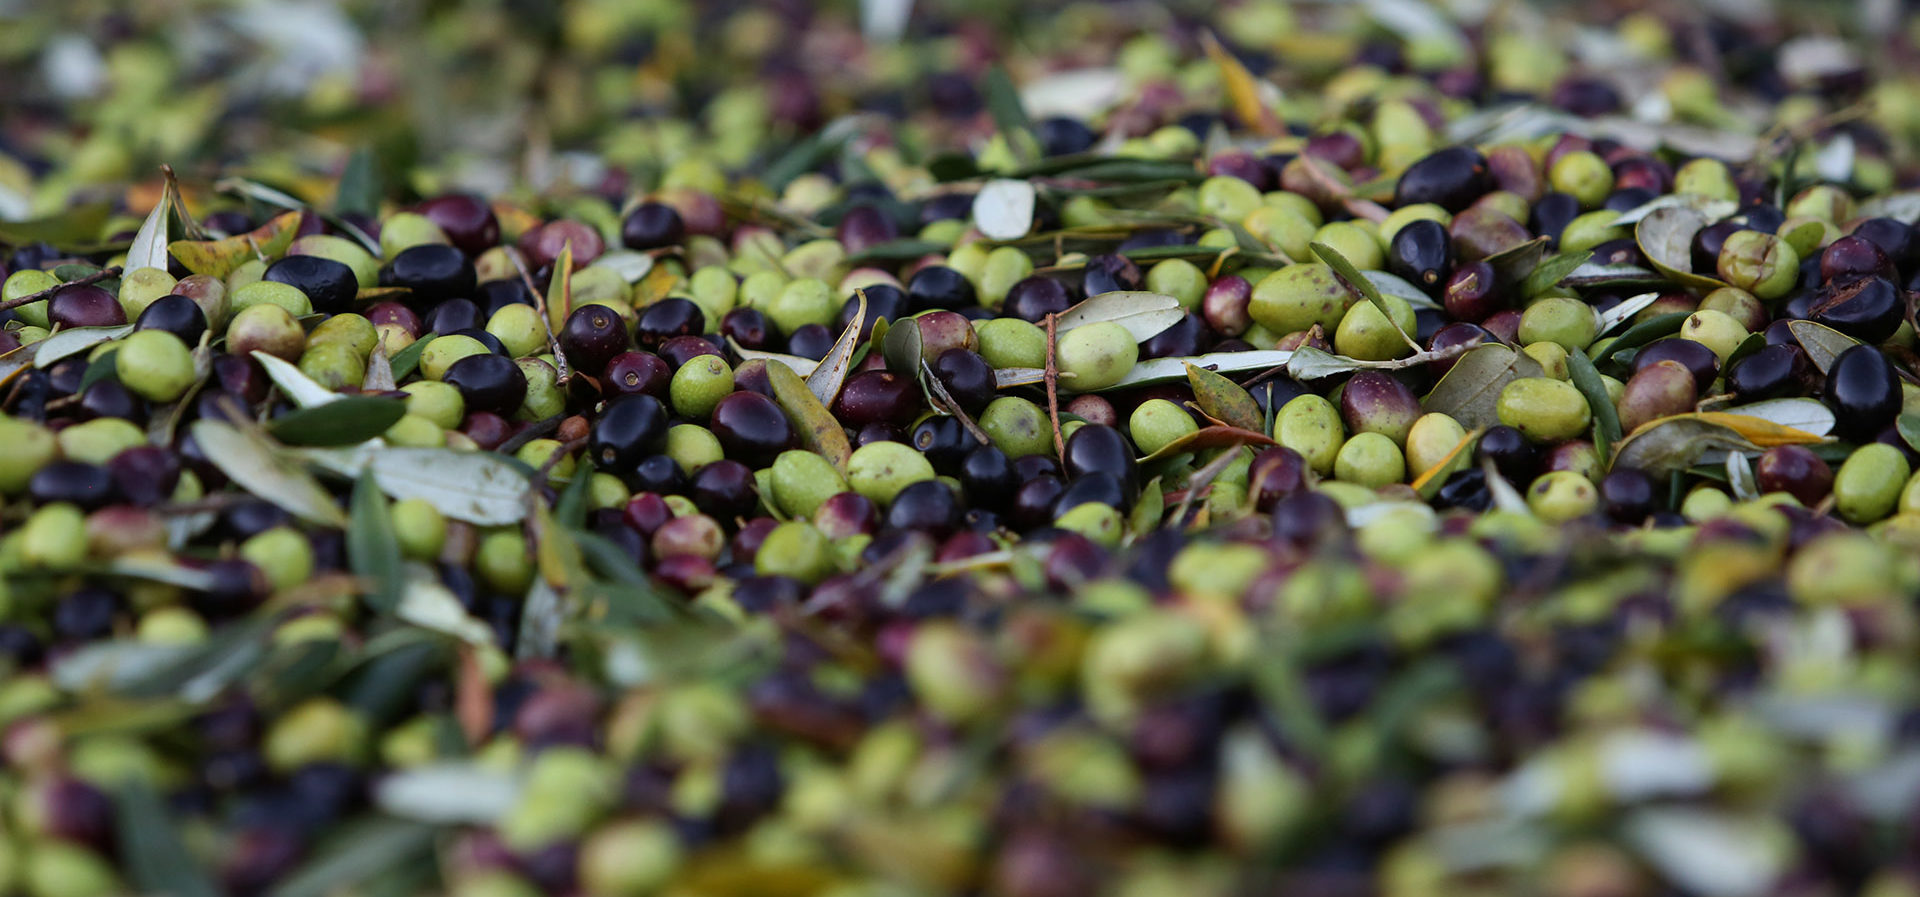 olivery olives